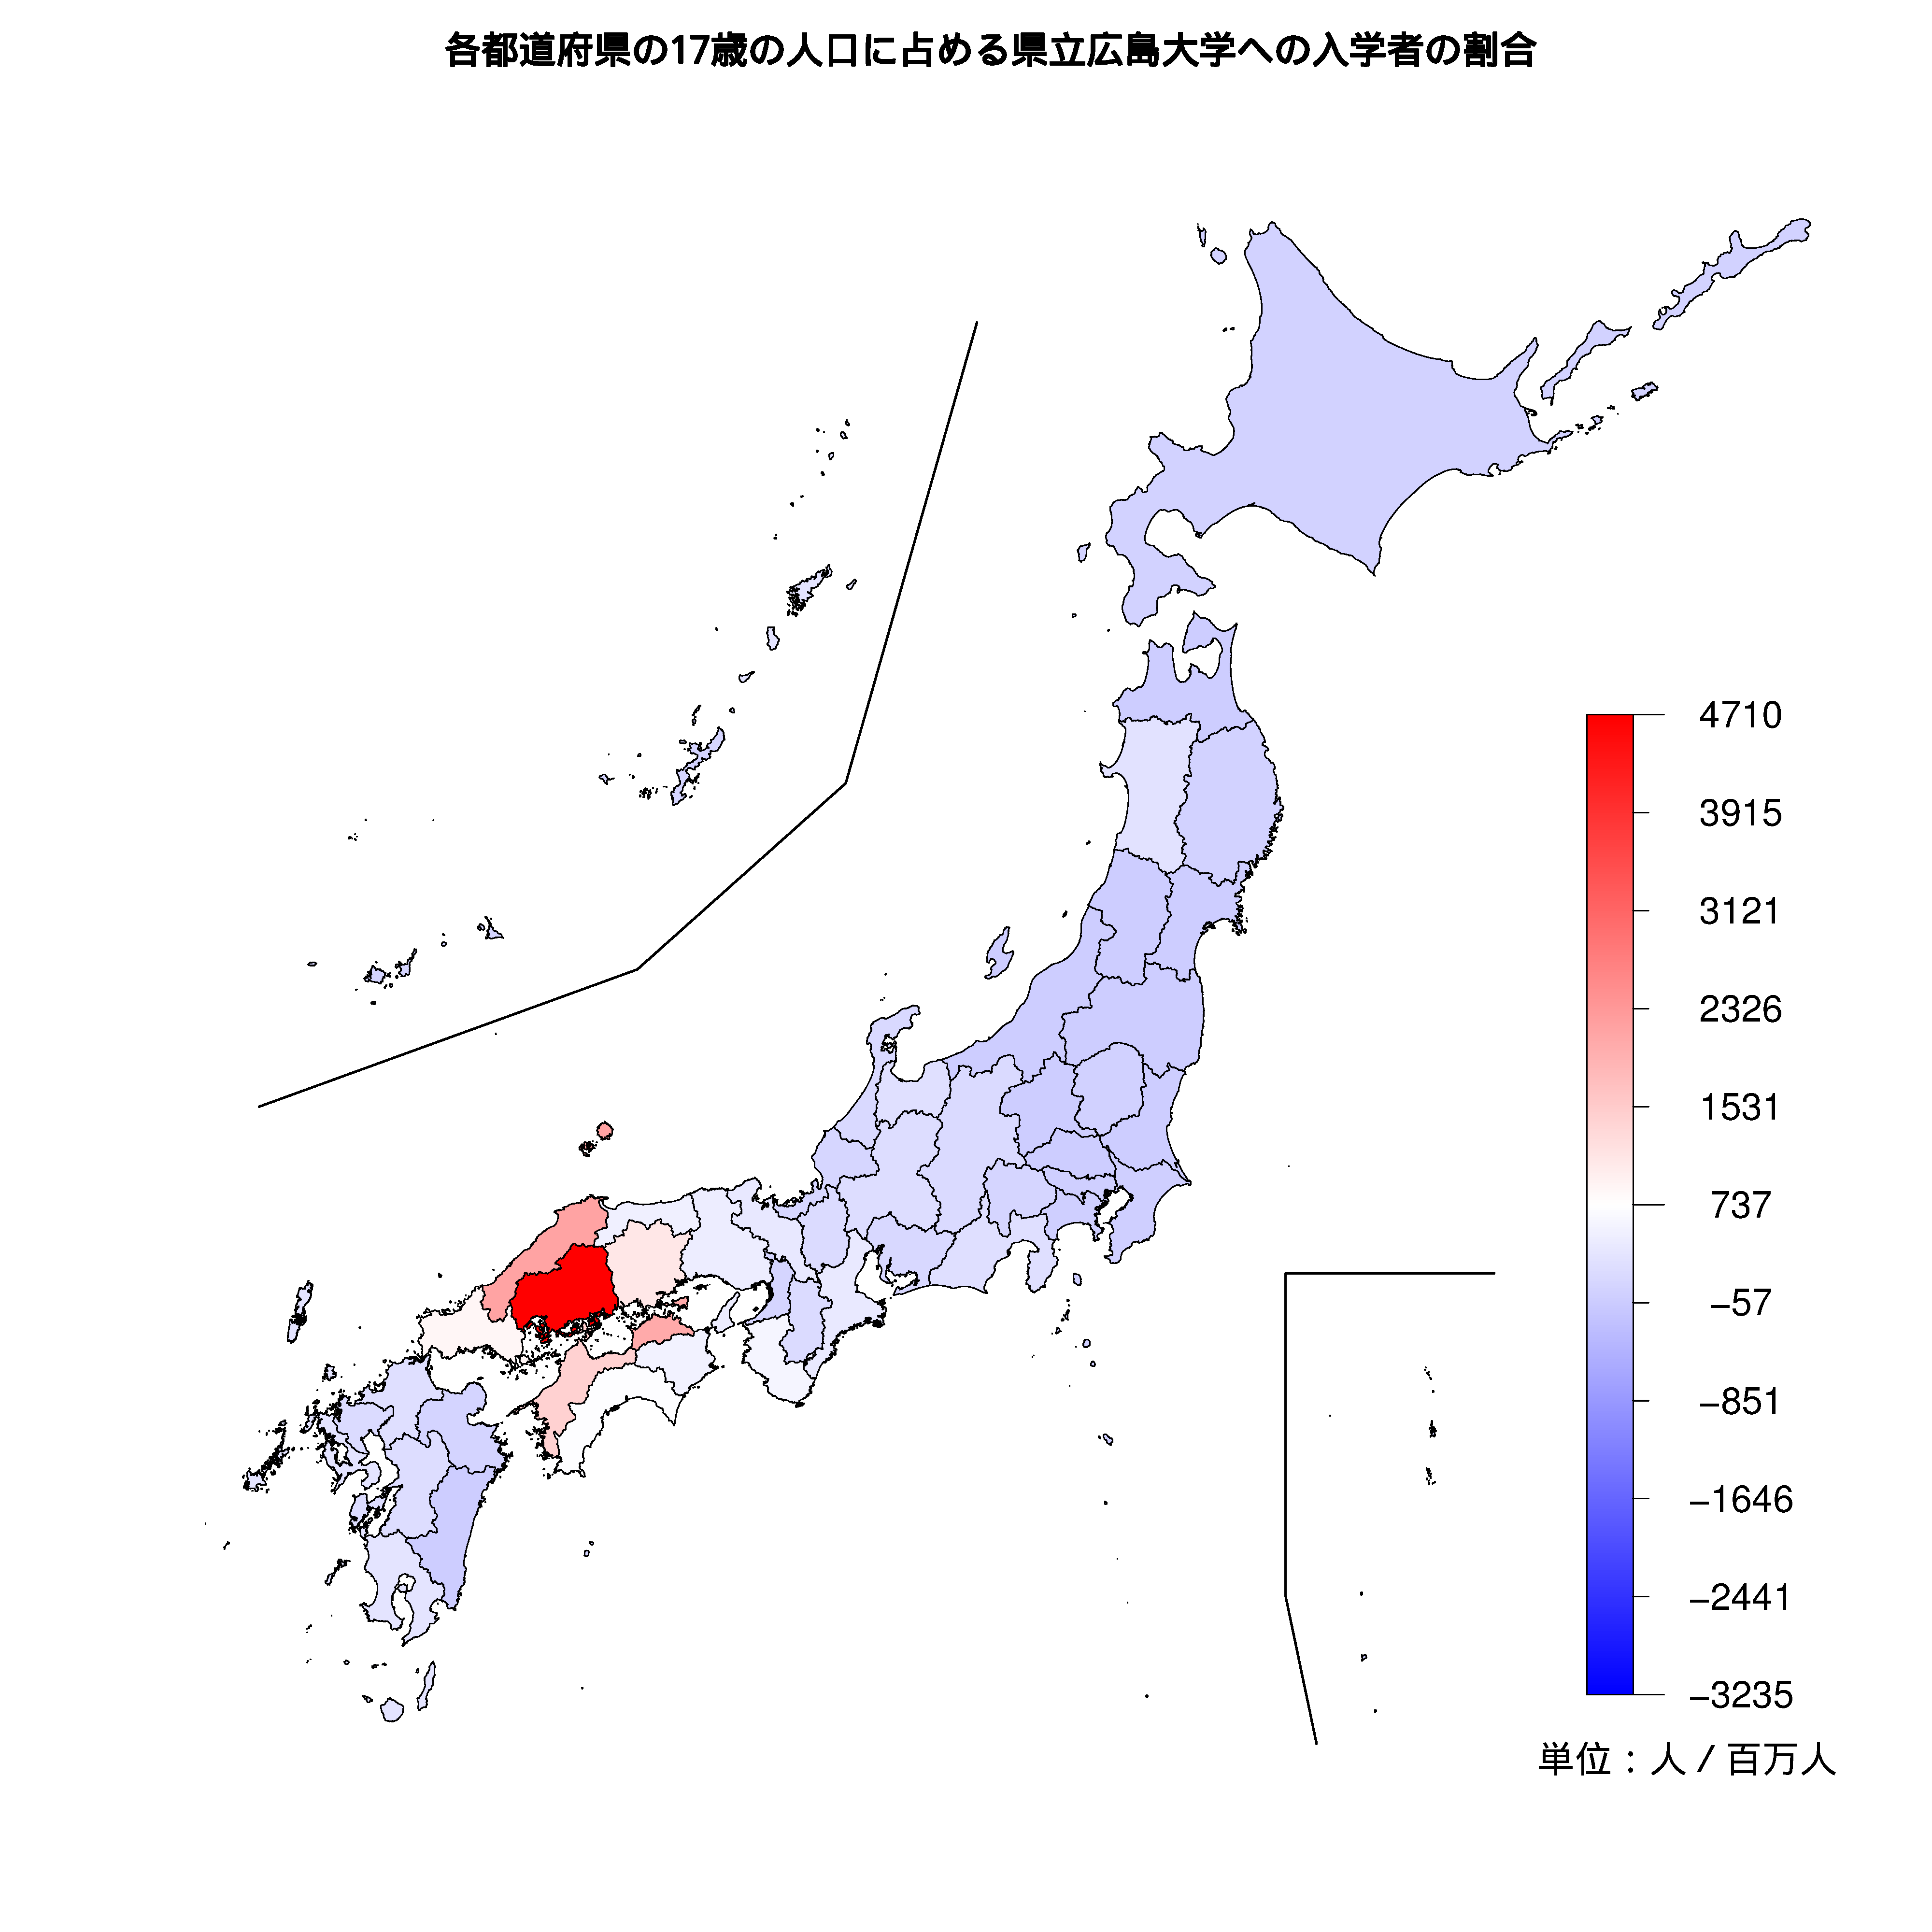 県立広島大学への入学者が多い都道府県の色分け地図